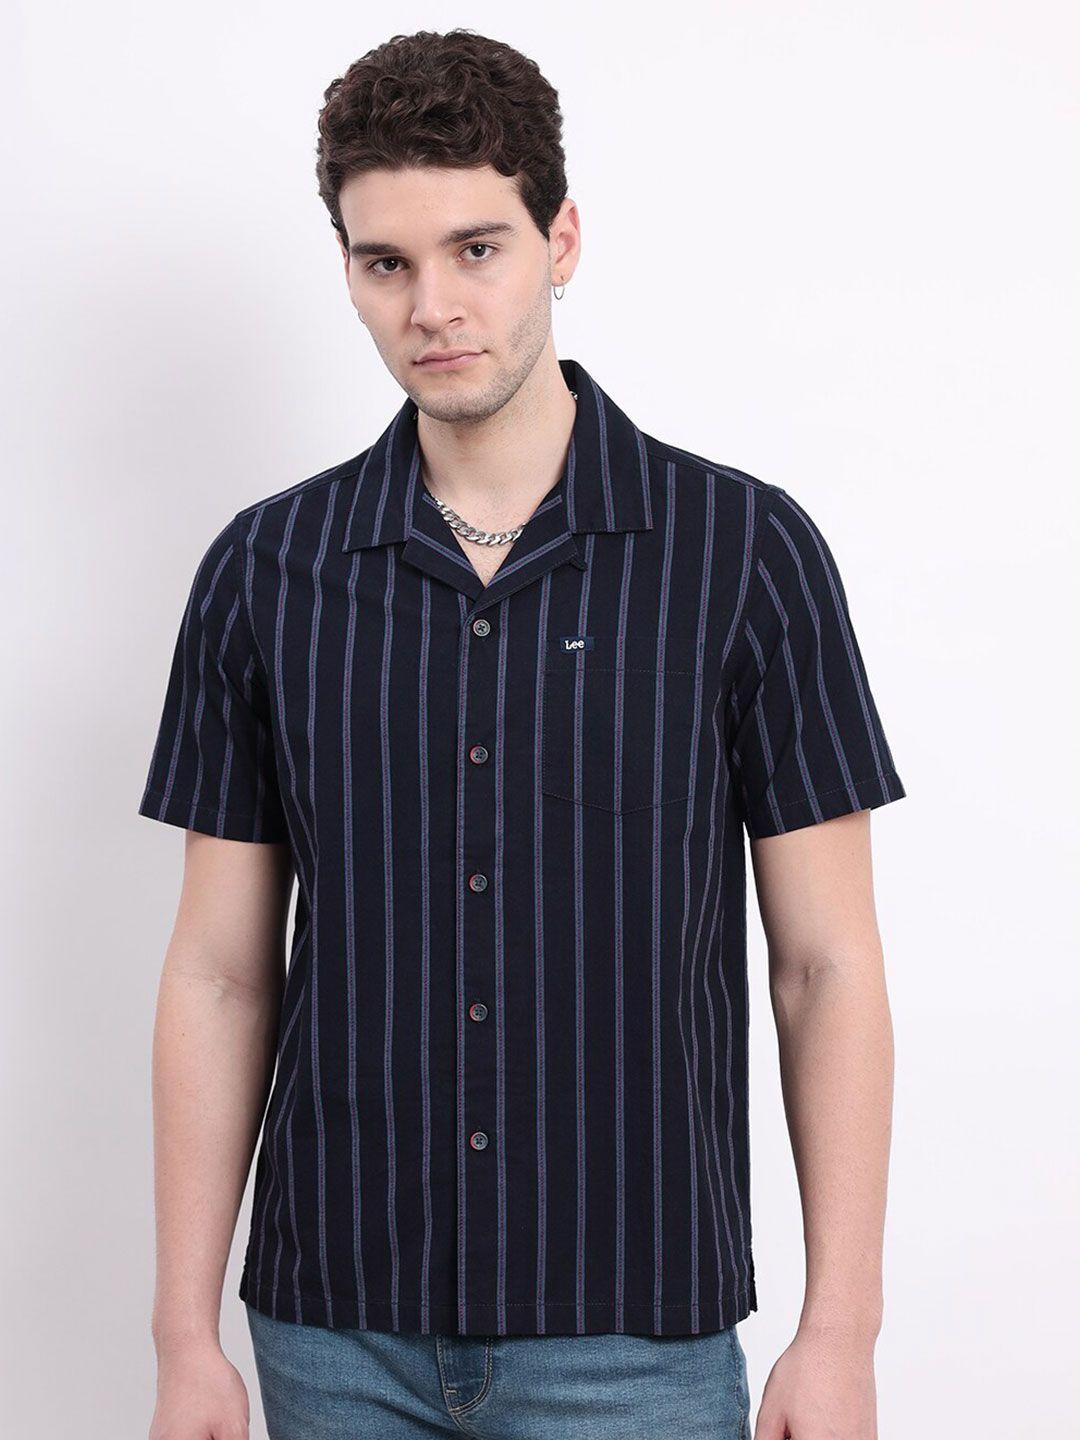 lee vertical striped comfort cuban collar cotton shirt